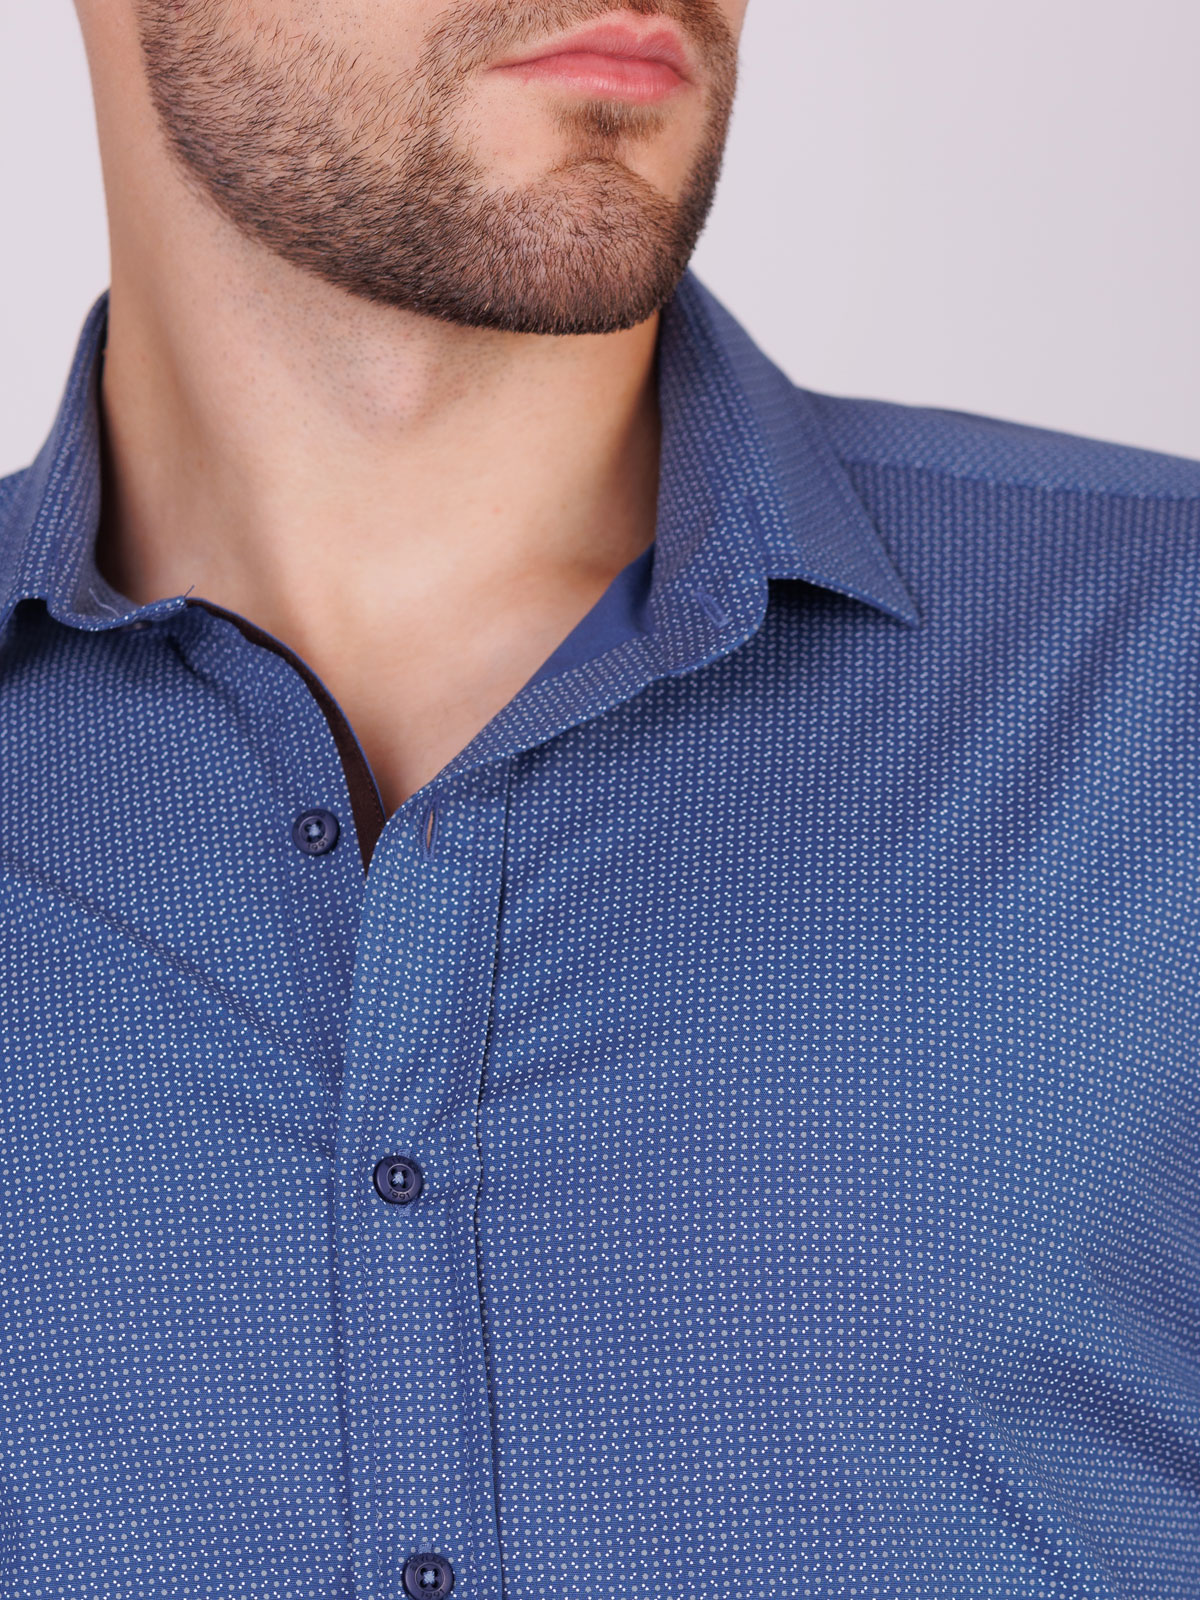 Κομψό πουκάμισο σε σκούρο μπλε max - 21581 € 44.43 img3